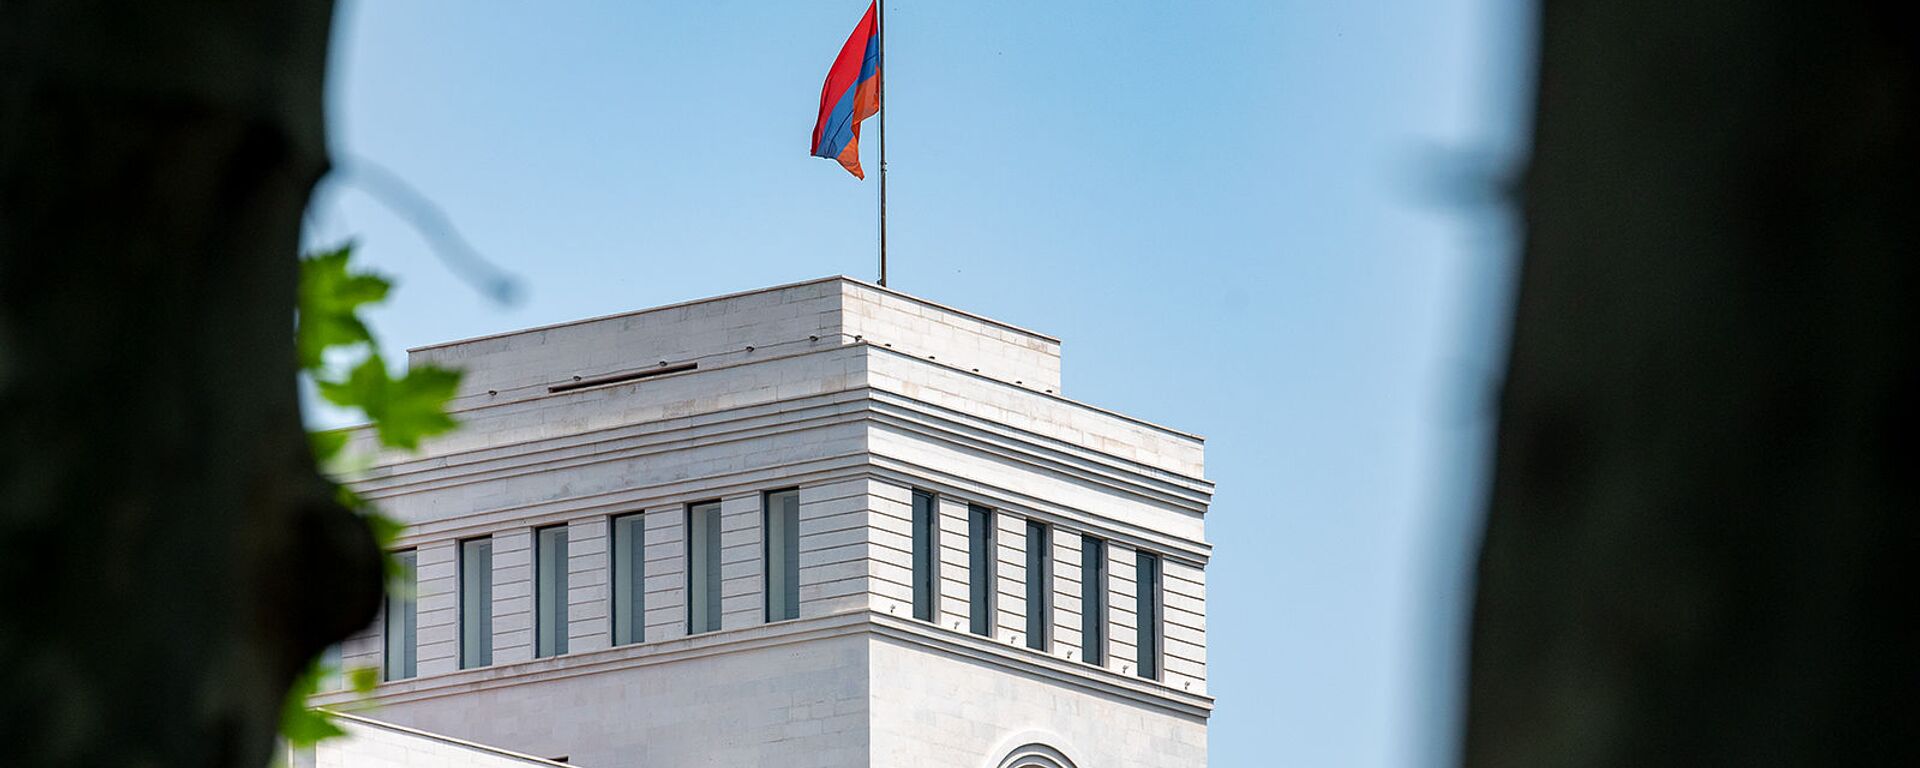 Здание Министерства иностранных дел Армении - Sputnik Армения, 1920, 23.07.2021